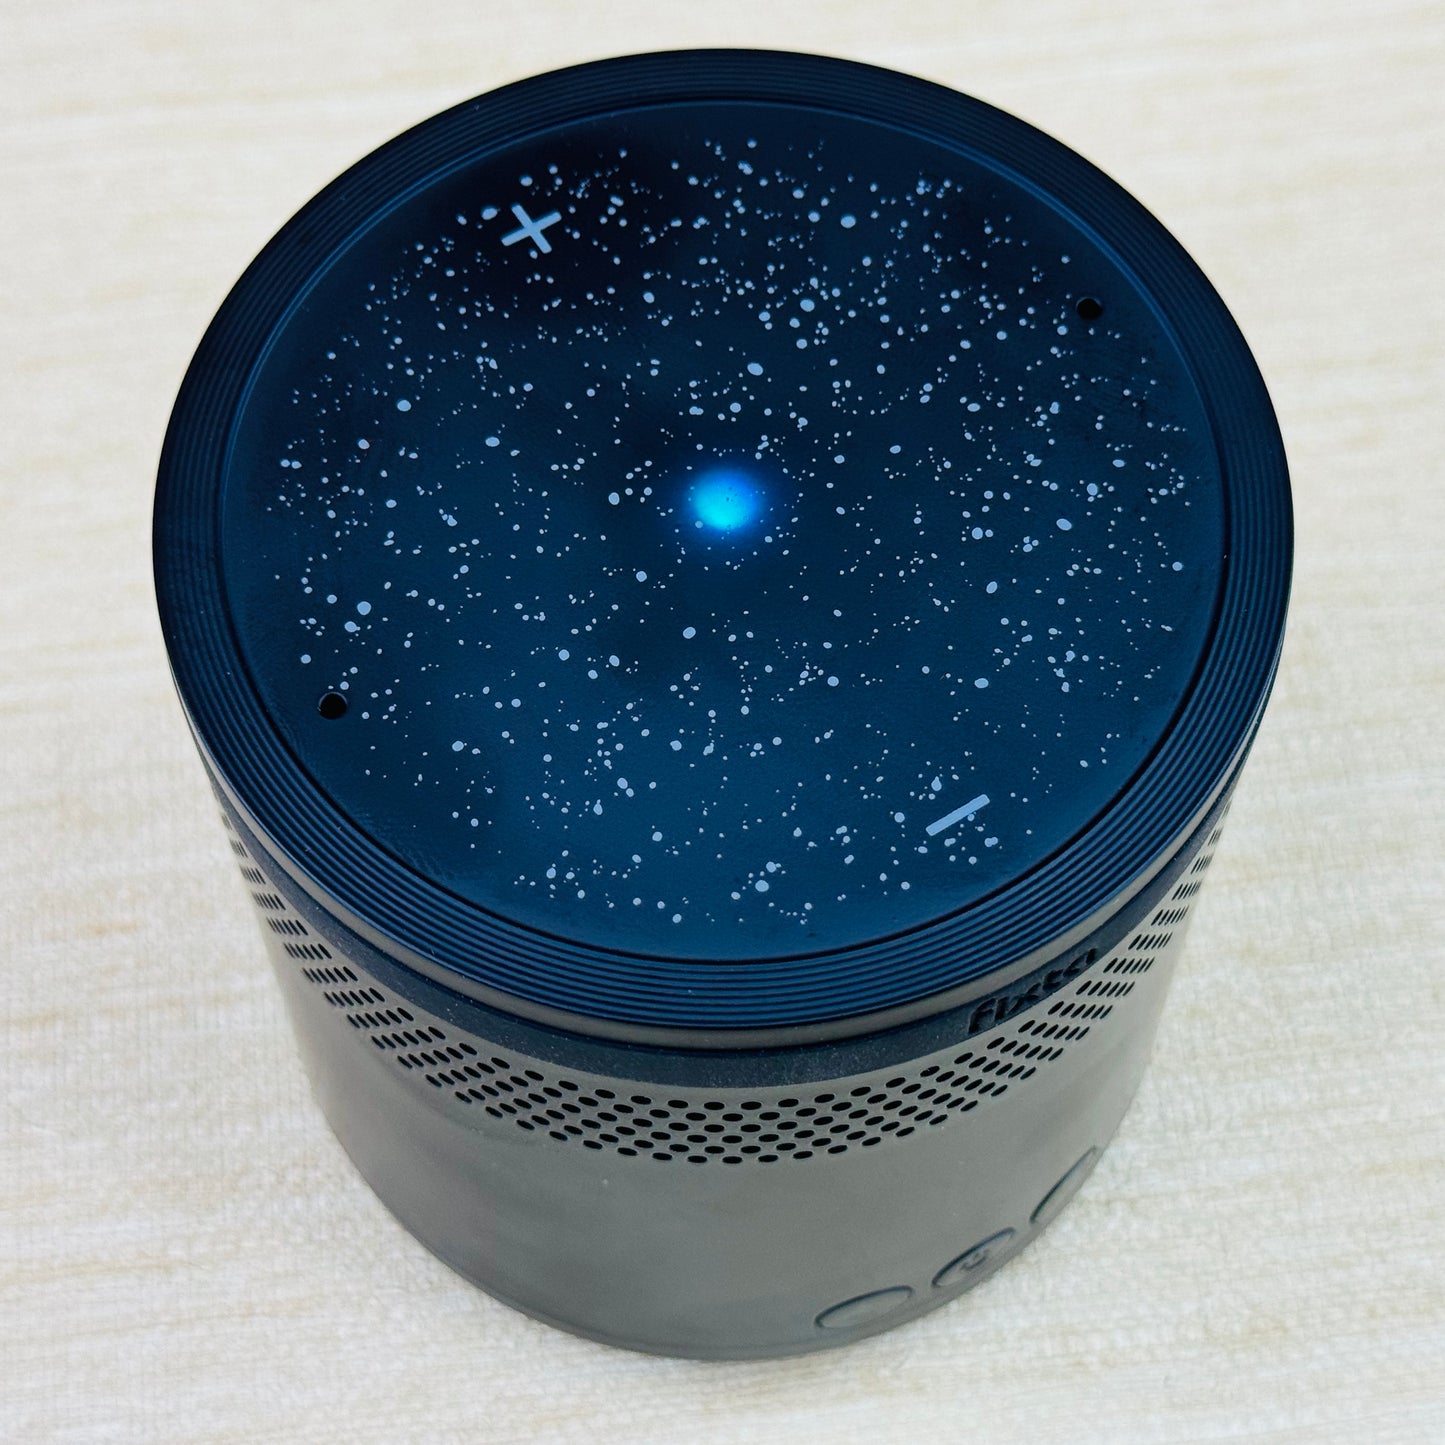 Fixta Bluetooth Speaker With Built in Alexa